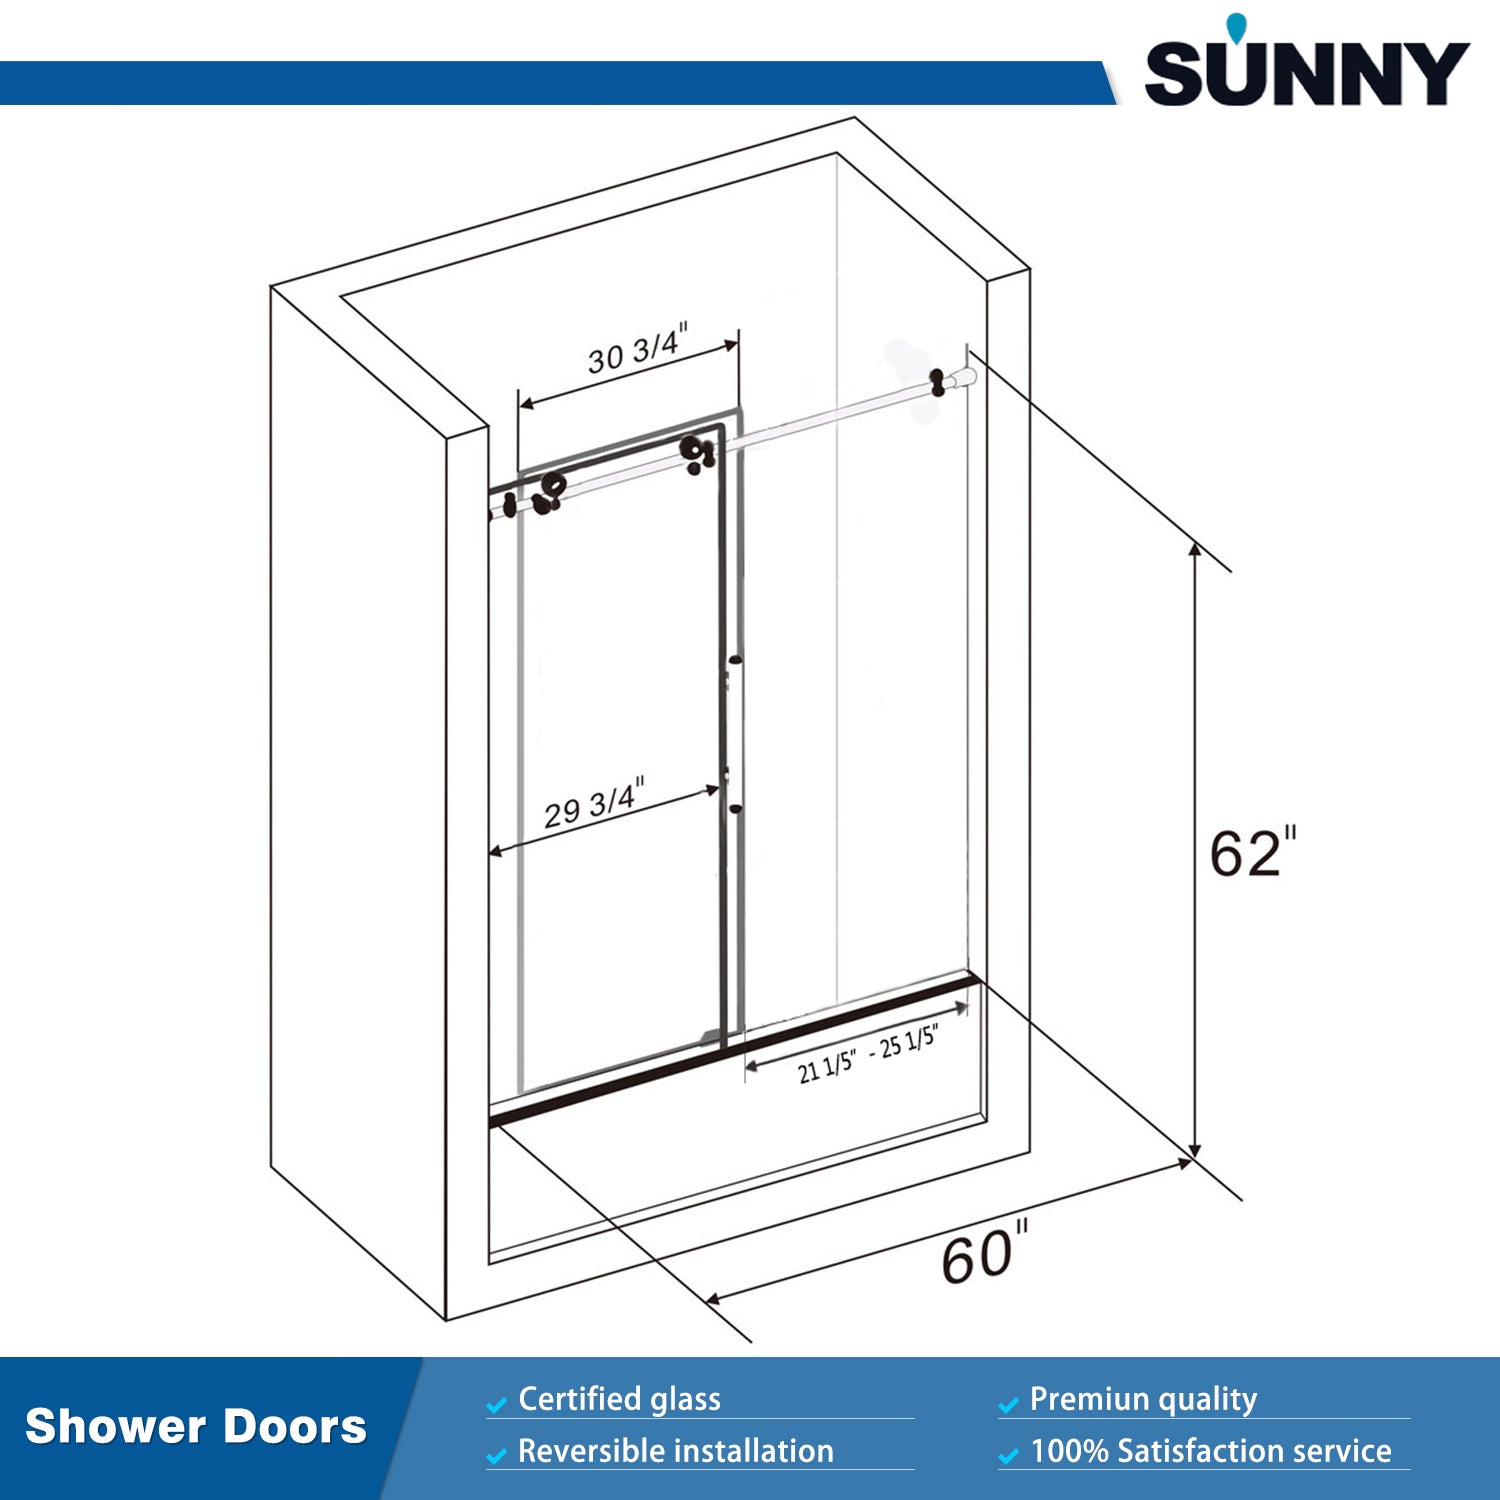 SUNNY SHOWER 60 in. W x 62 in. H Frameless Bathtub Sliding Doors Size Chart